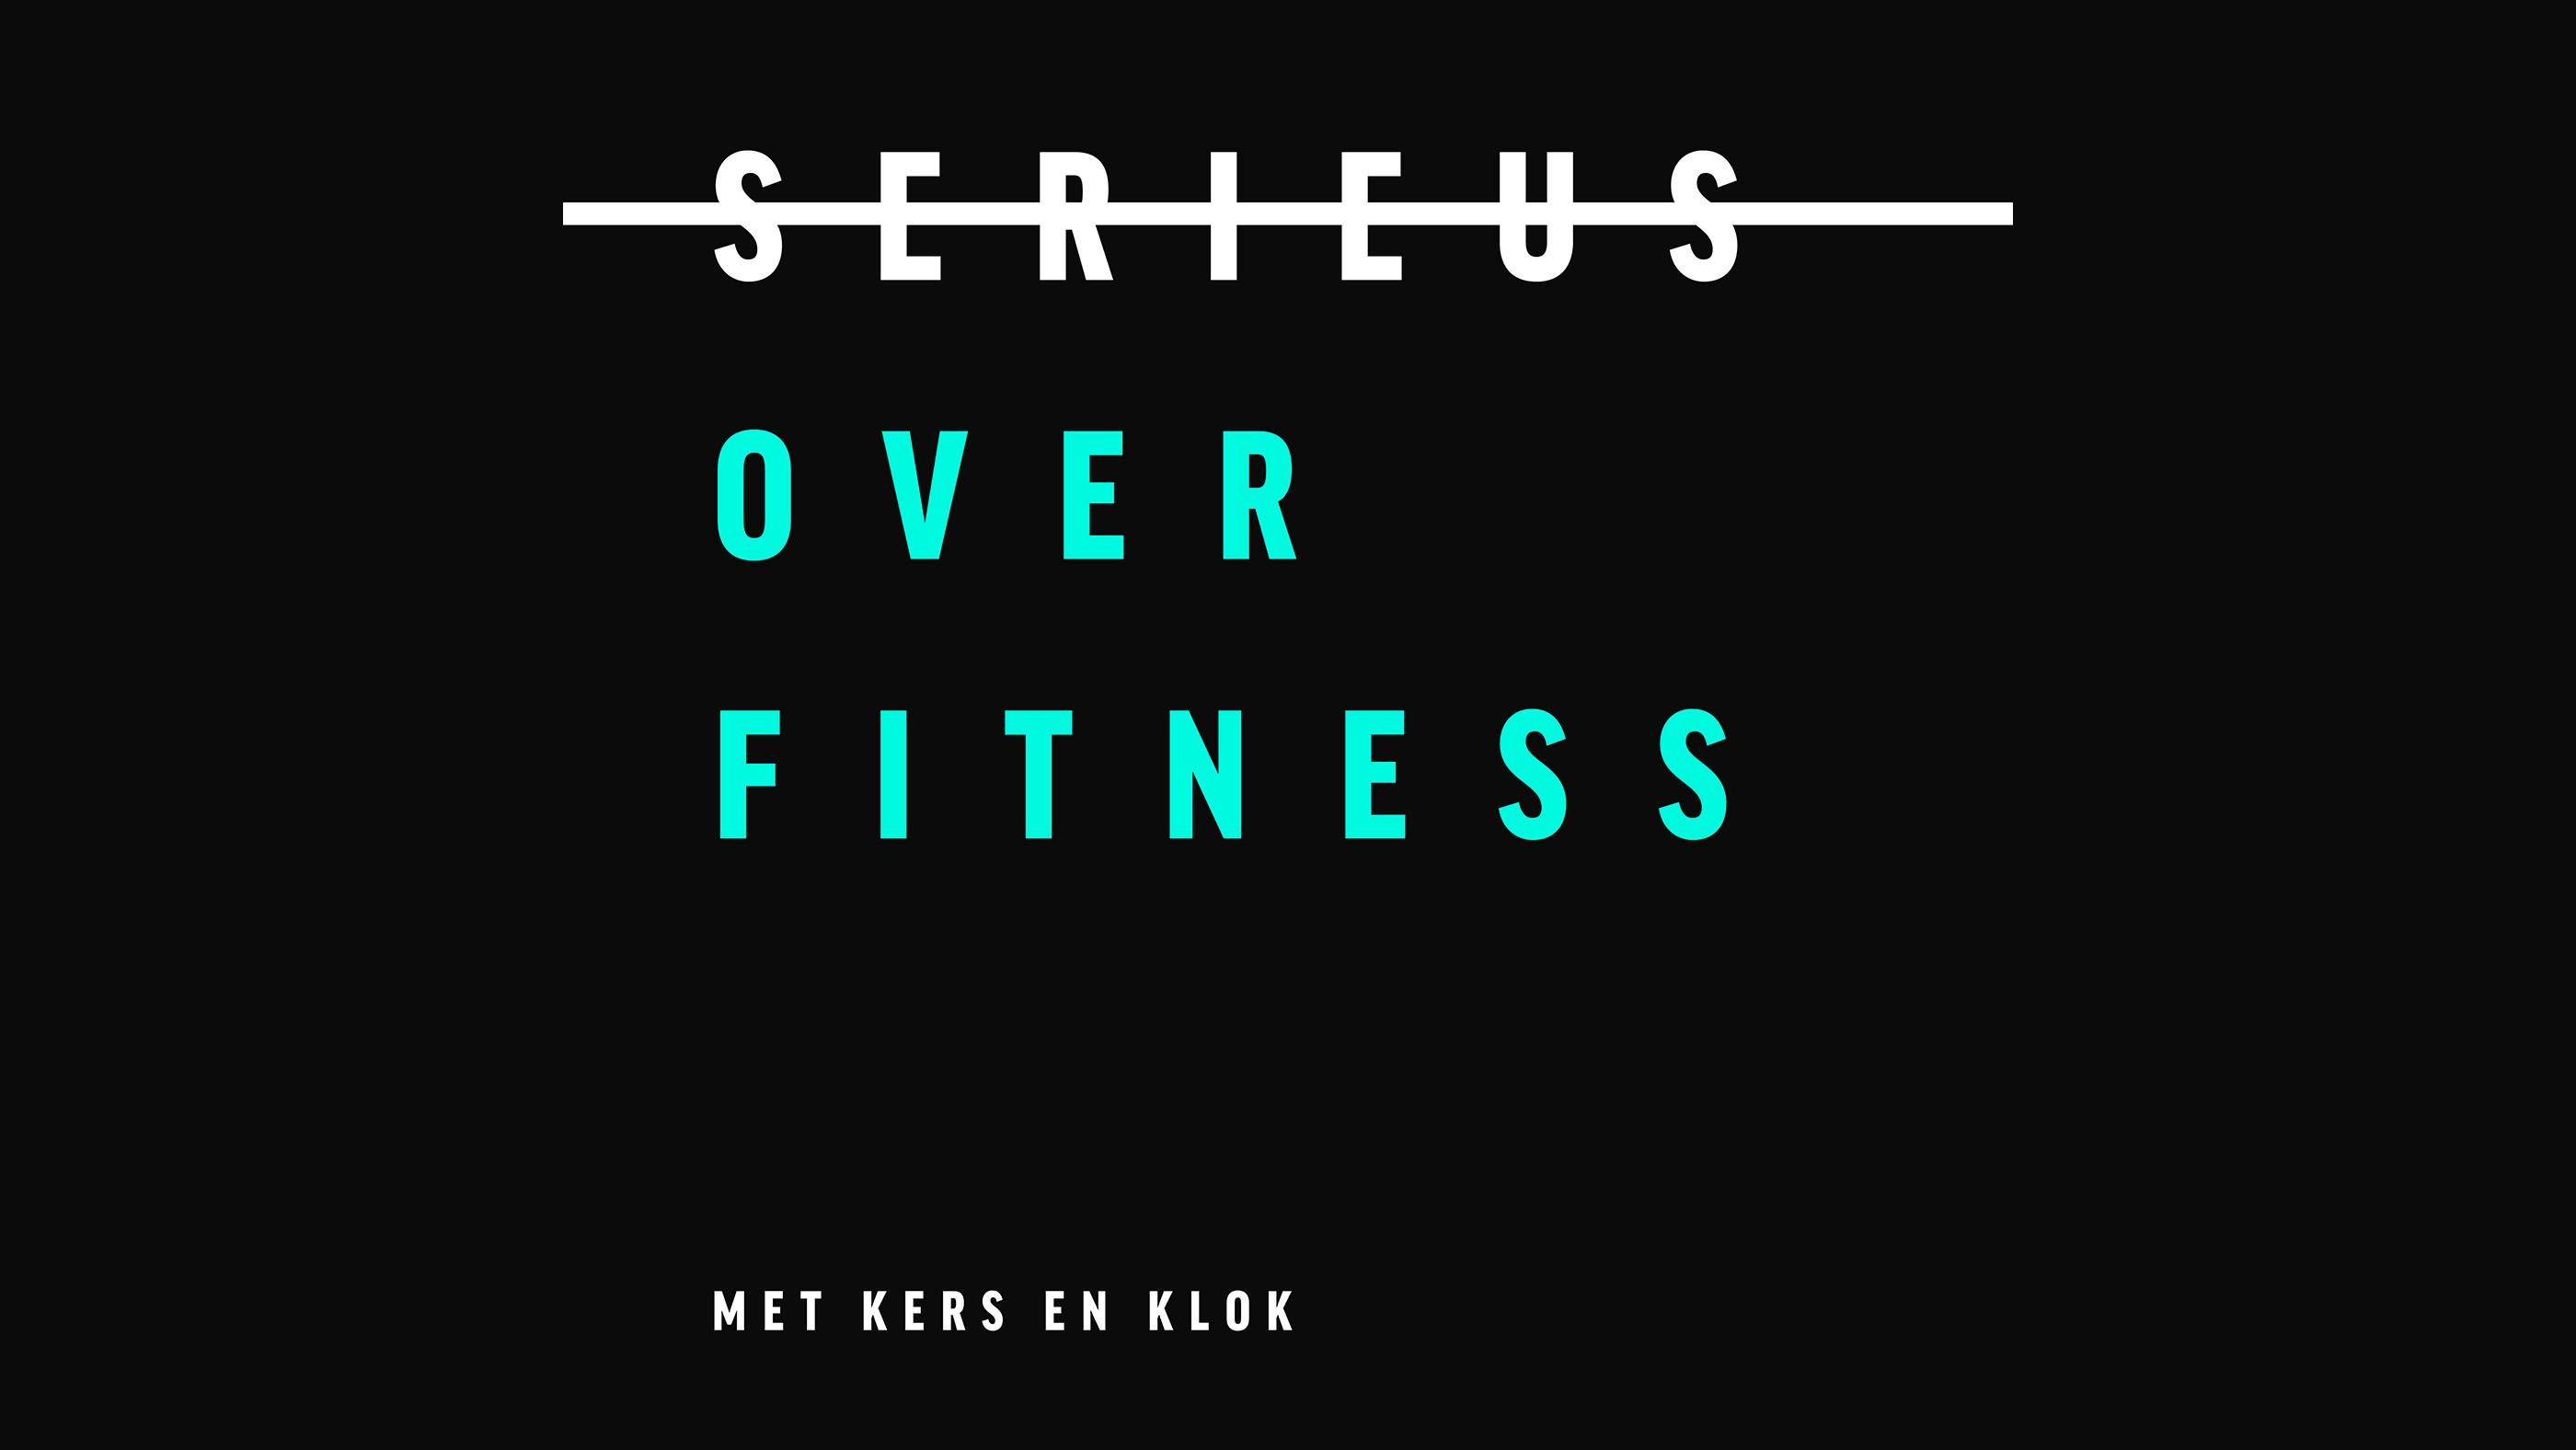 Nederlandse fitness podcast Serieus over Fitness met Kers en Klok